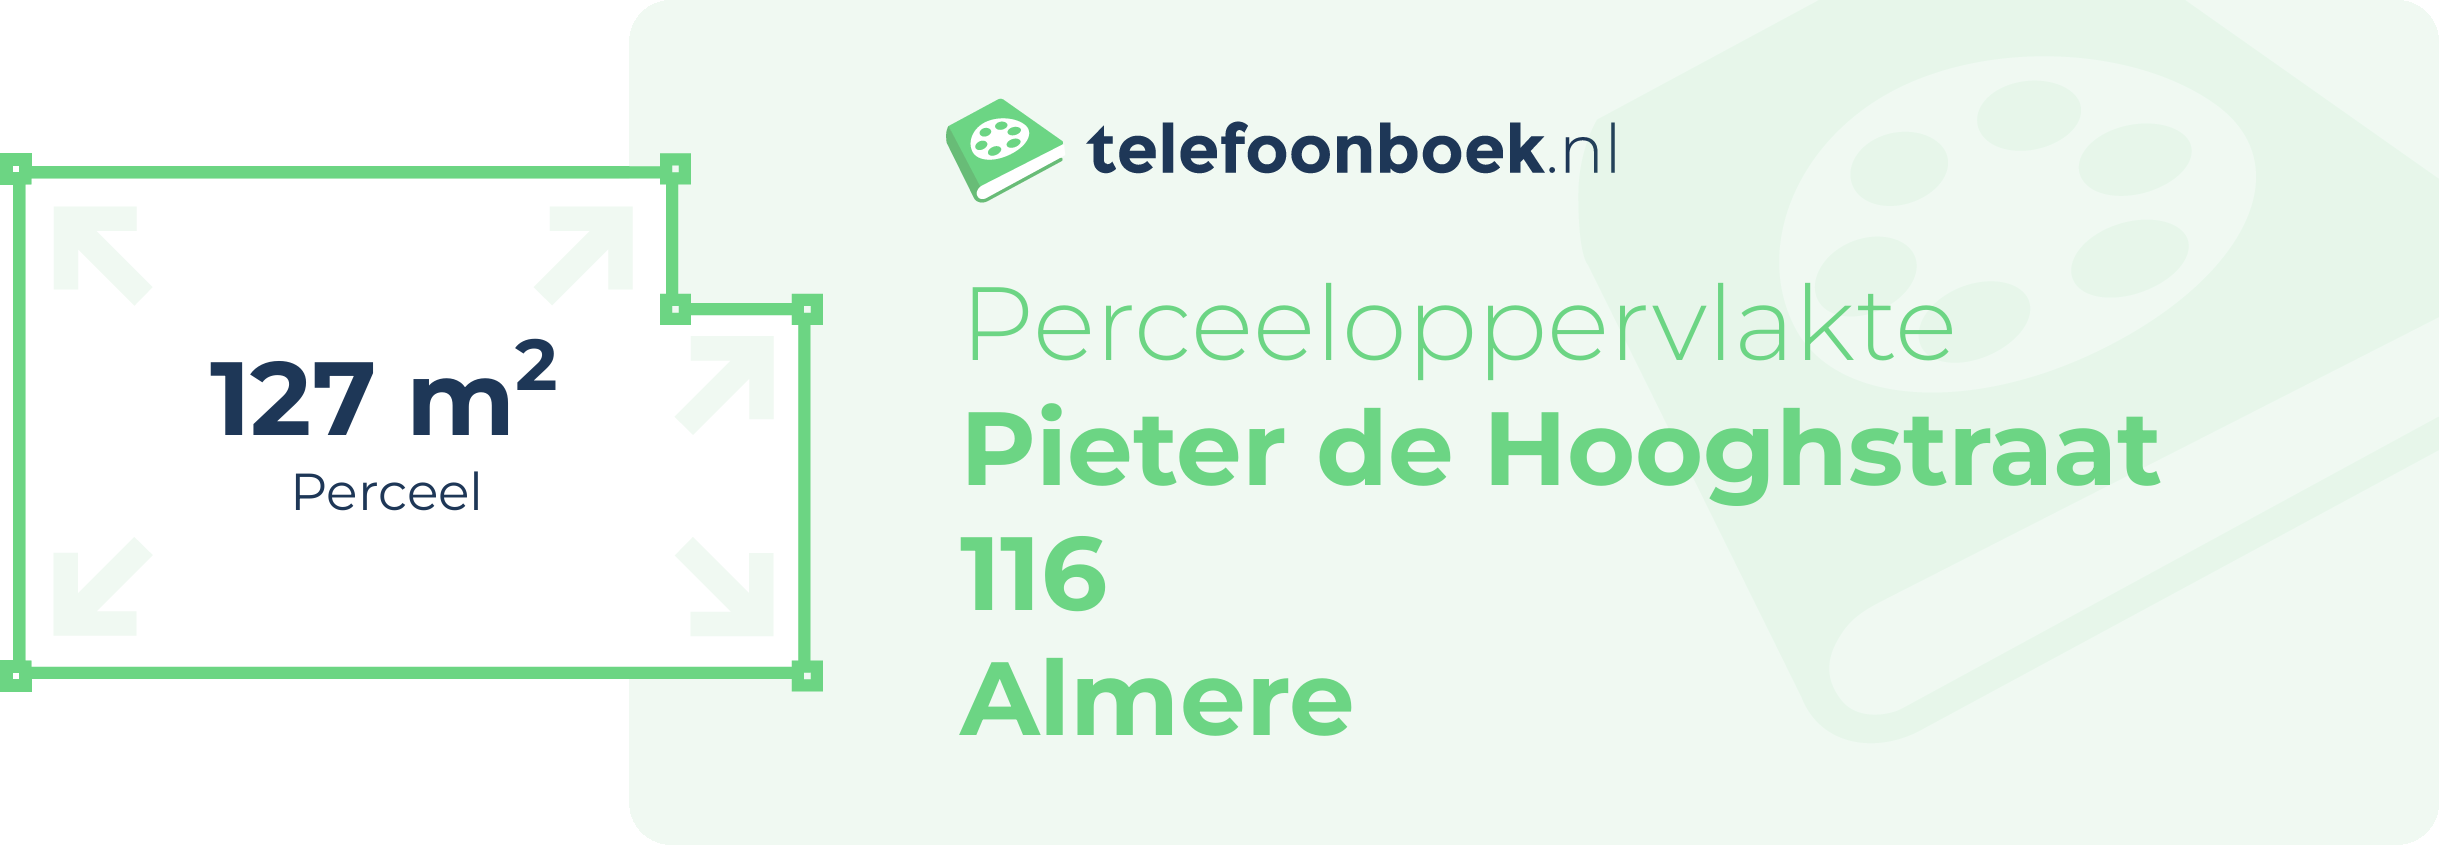 Perceeloppervlakte Pieter De Hooghstraat 116 Almere